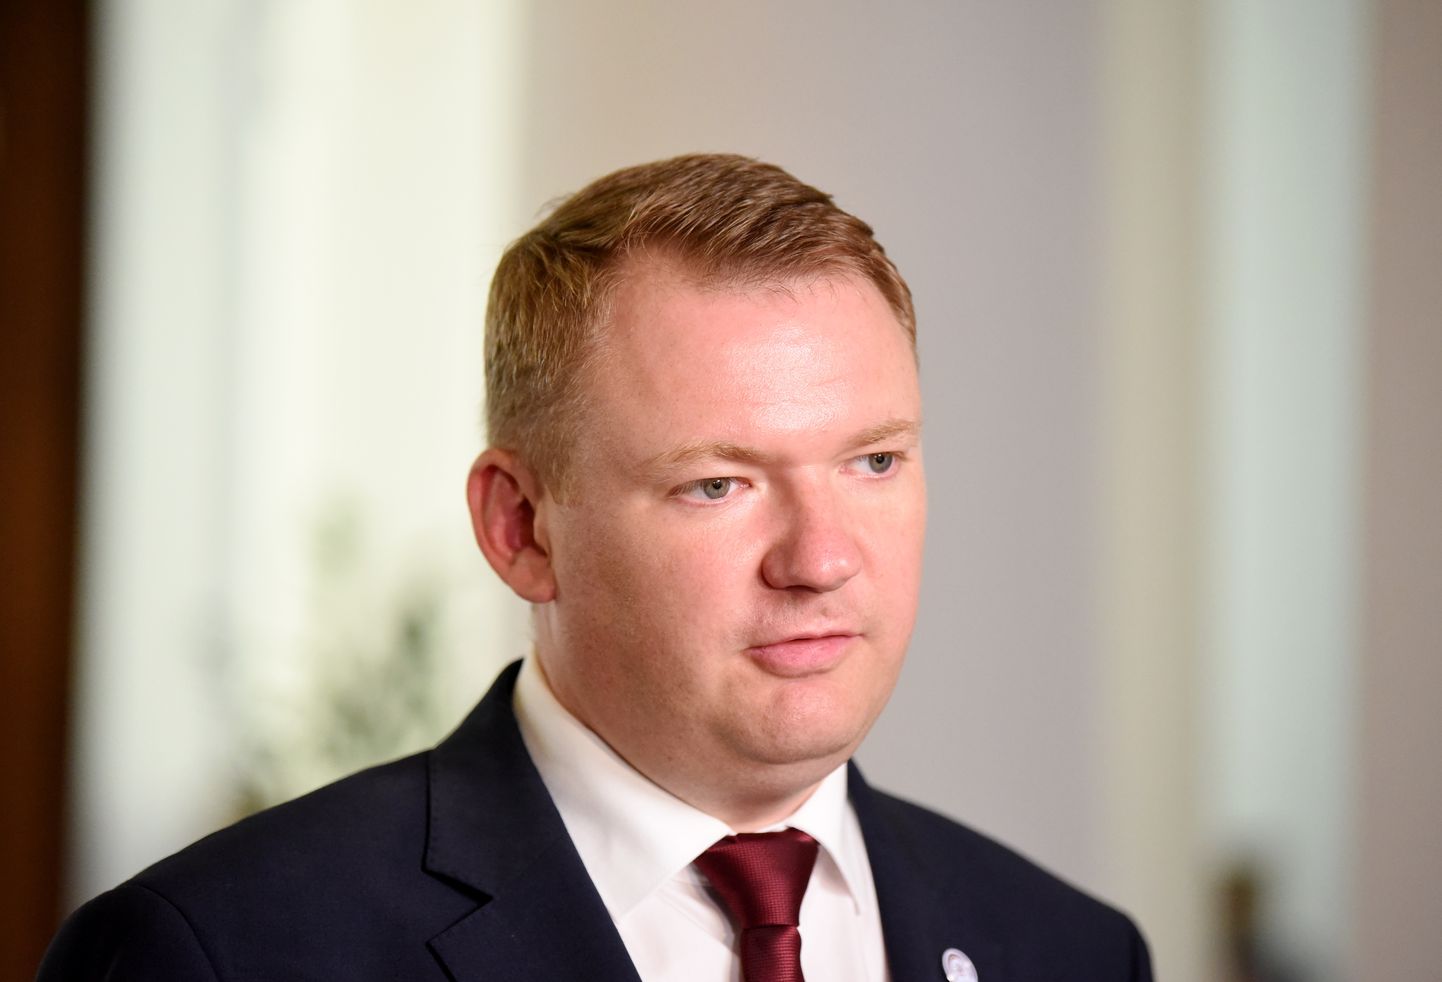 Partiju apvienības "Apvienotais saraksts" līdzpriekšsēdētājs, Saeimas priekšsēdētājs Edvards Smiltēns